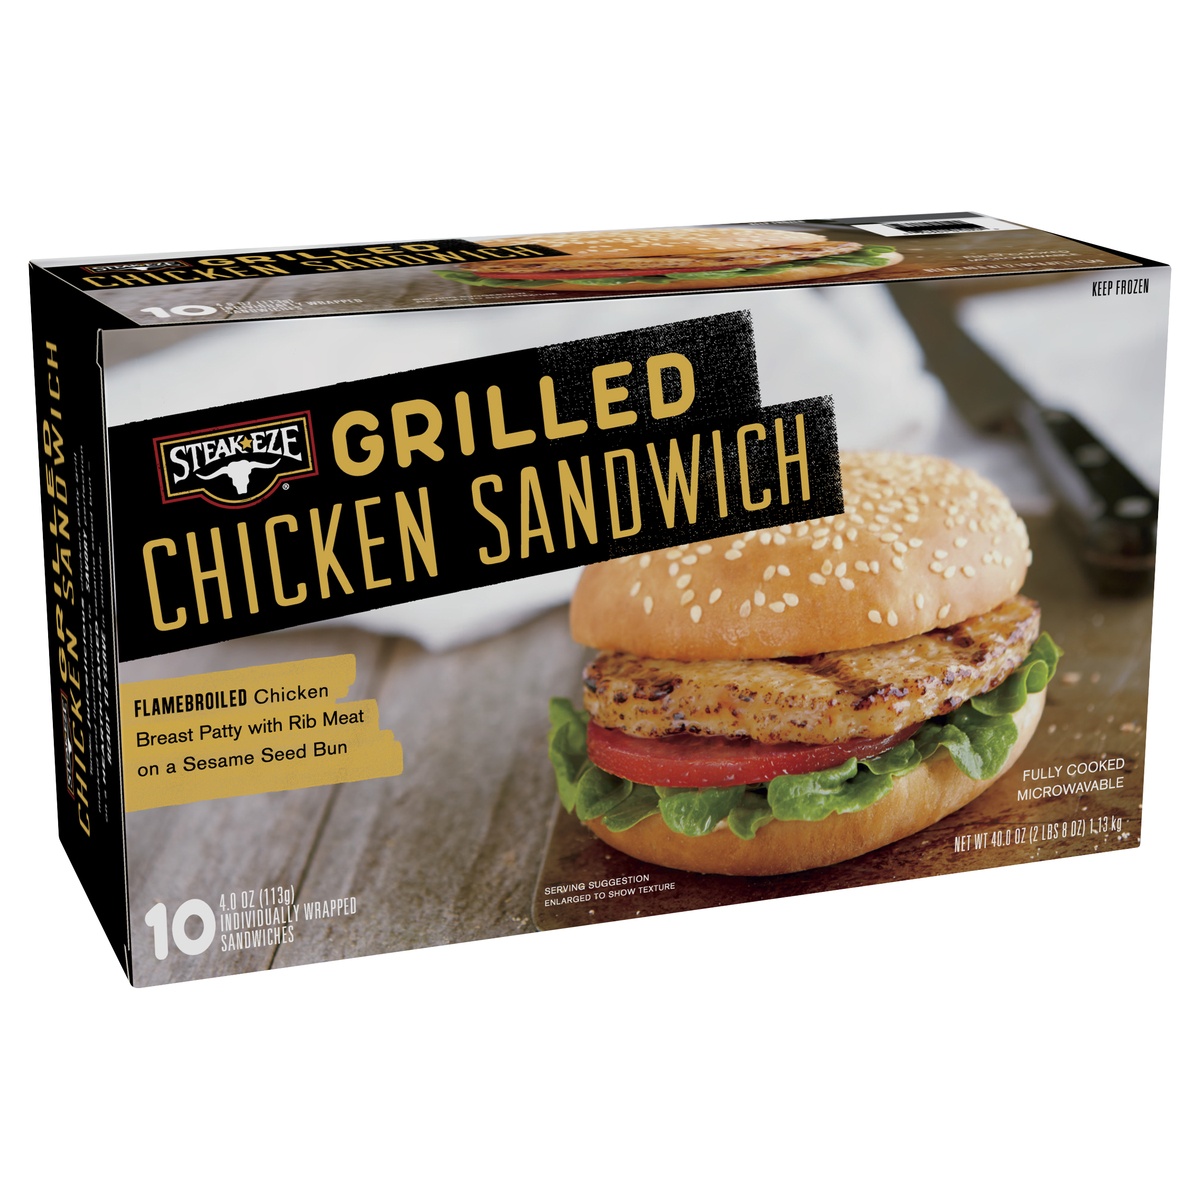 slide 4 of 8, AdvancePierre Steak Eze Grilled Chicken Sandwich, 40 oz